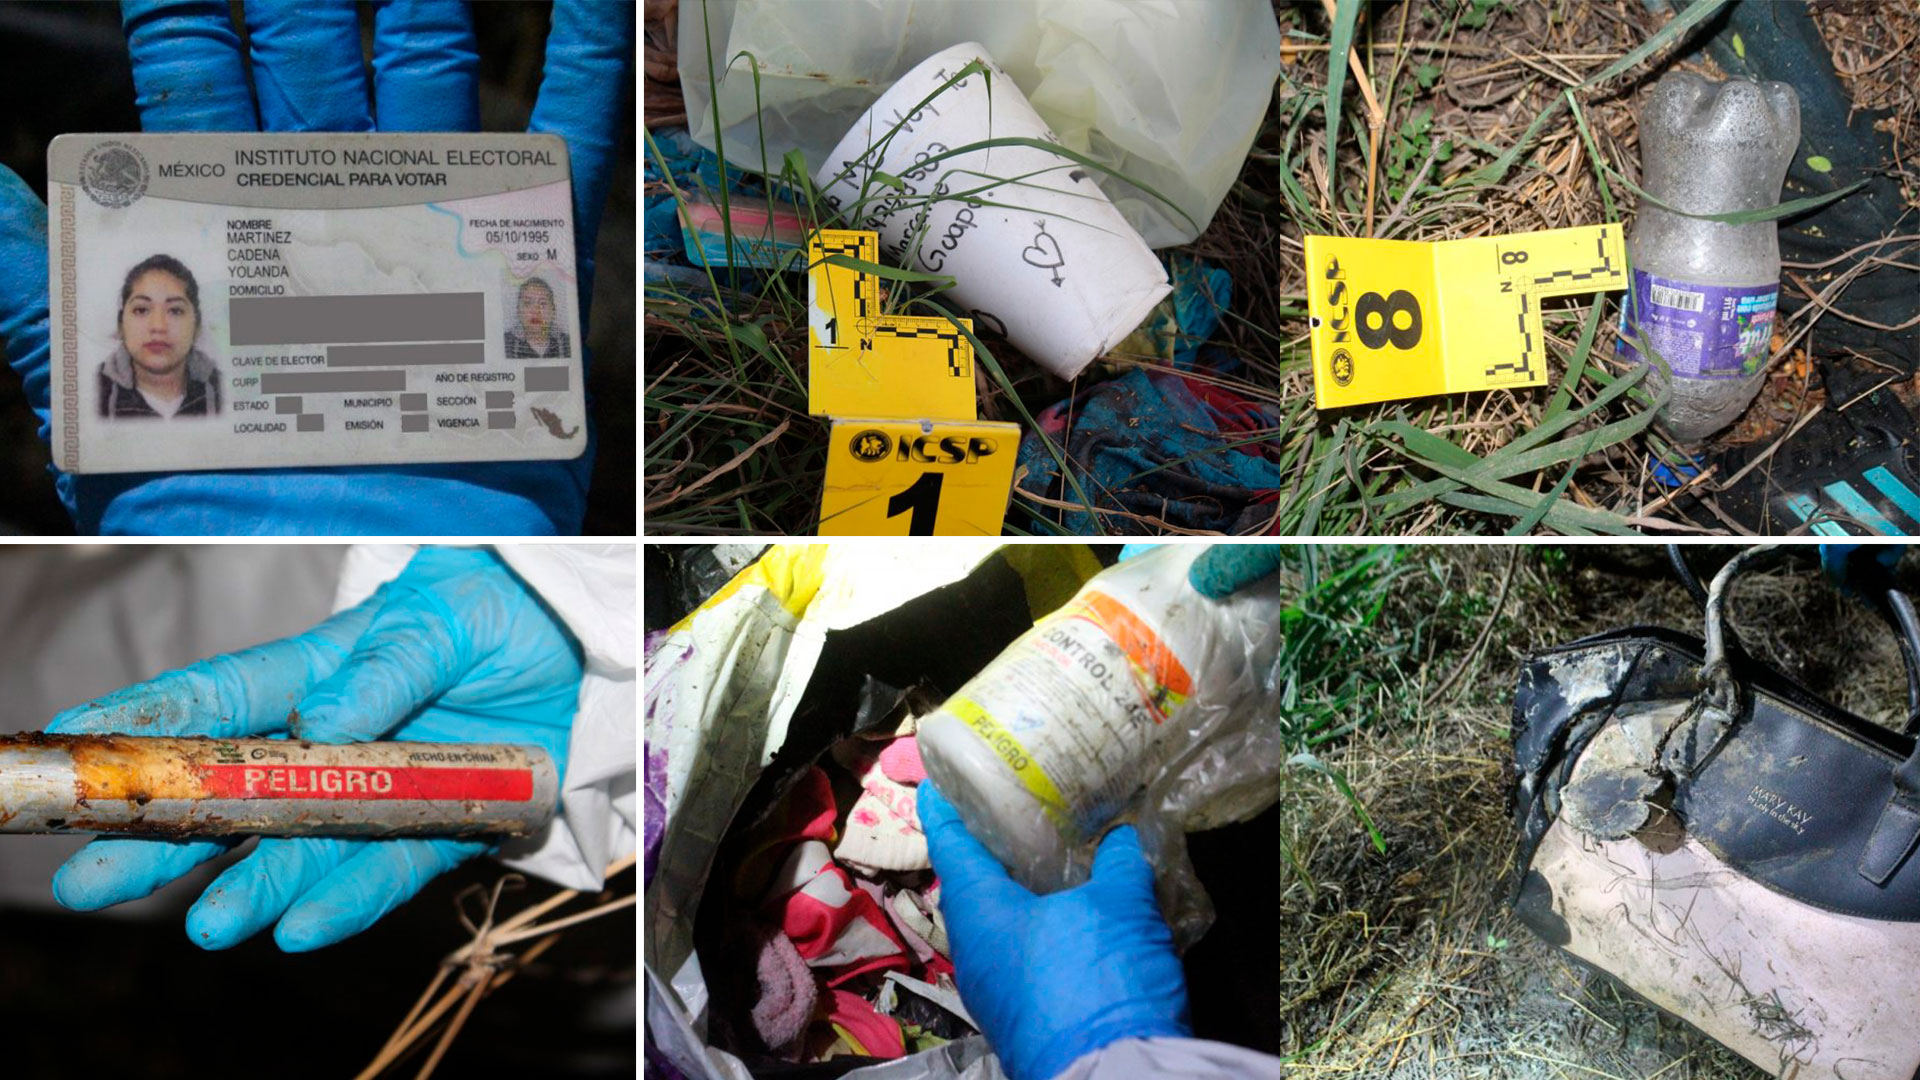 Entre los objetos encontrados junto al cuerpo de Yolanda Martínez había dos recipientes con la leyenda "Peligro" (Foto: Fiscalía de NL)